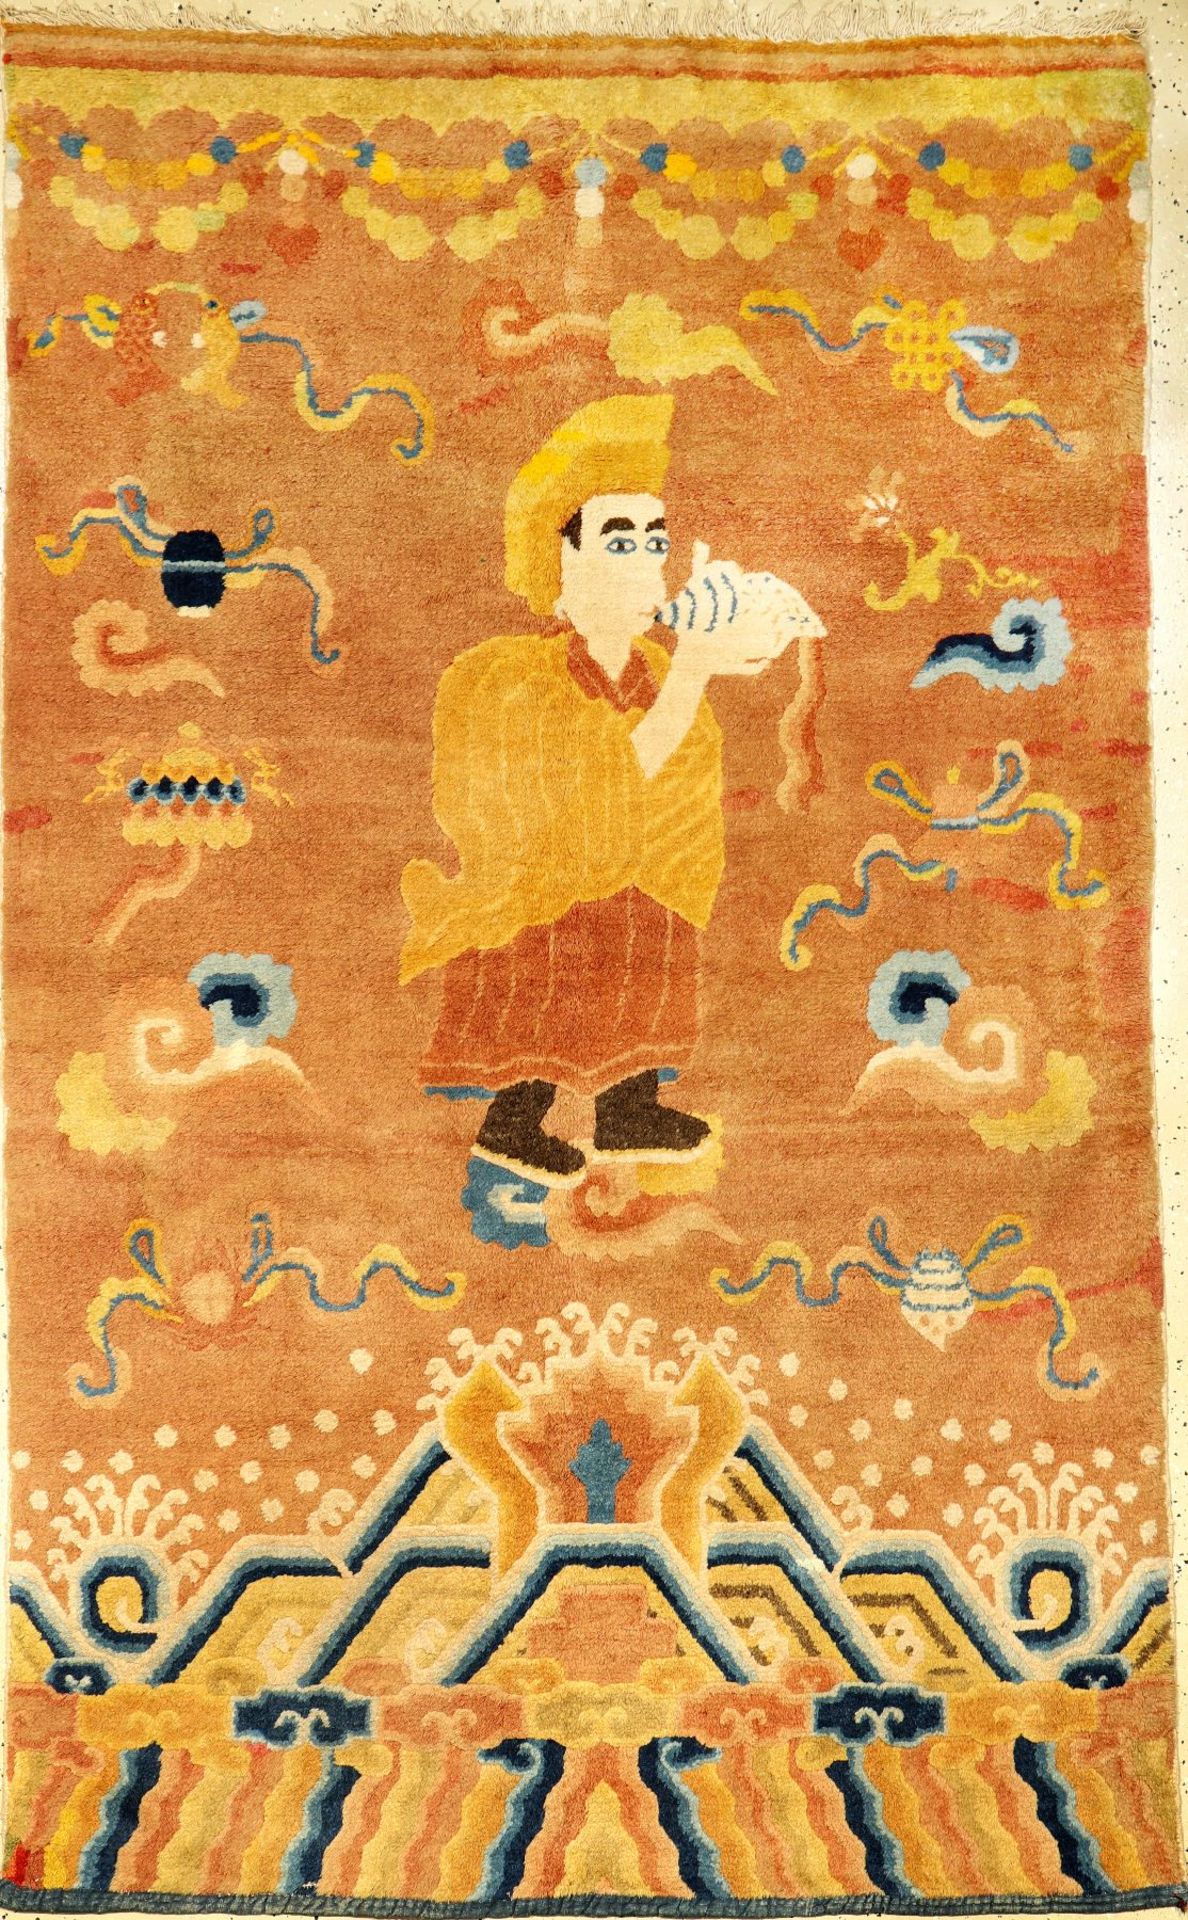 Seltener Ning-Hsia "Tempelteppich" antik (Lama Aufruf zum Gebet), Westchina, 1.Hälfte 19.Jhd., Wolle